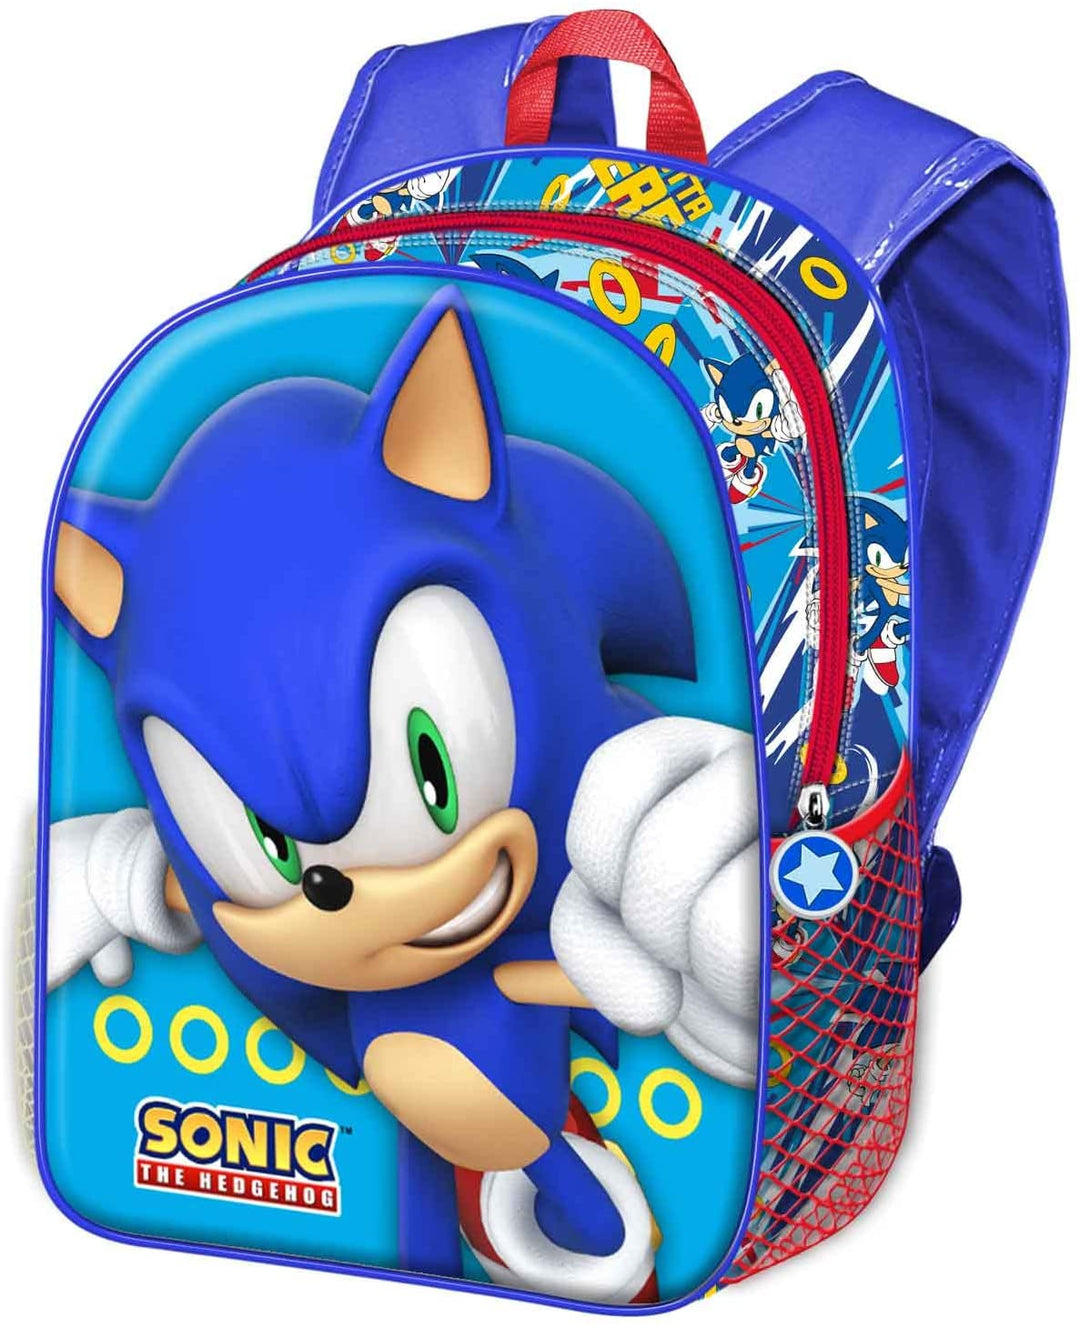 Sega-Sonic Fast-Small 3D Backpack, Blue